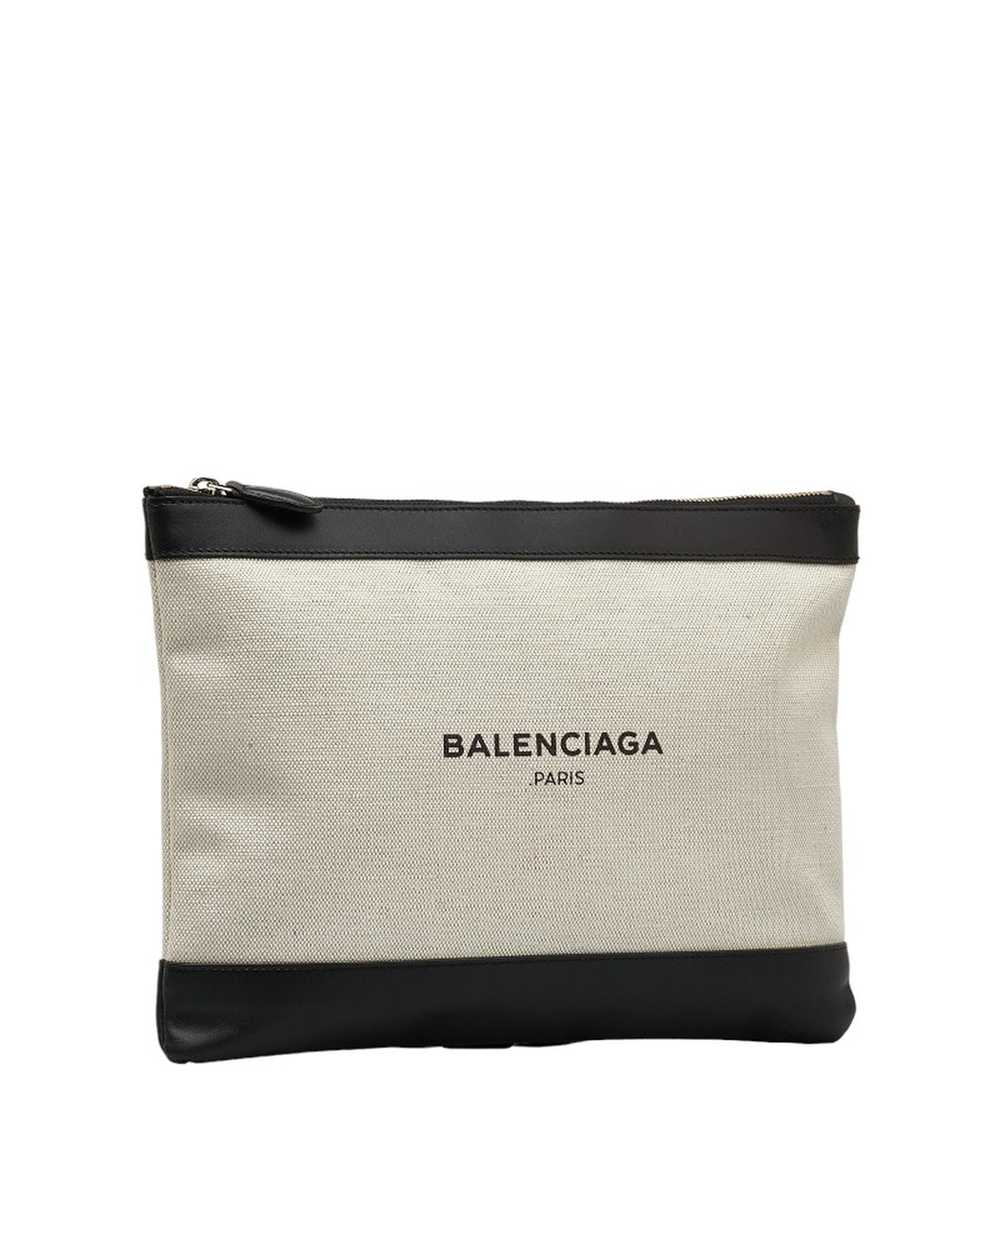 Balenciaga Navy Canvas Clutch Bag in Excellent Co… - image 2